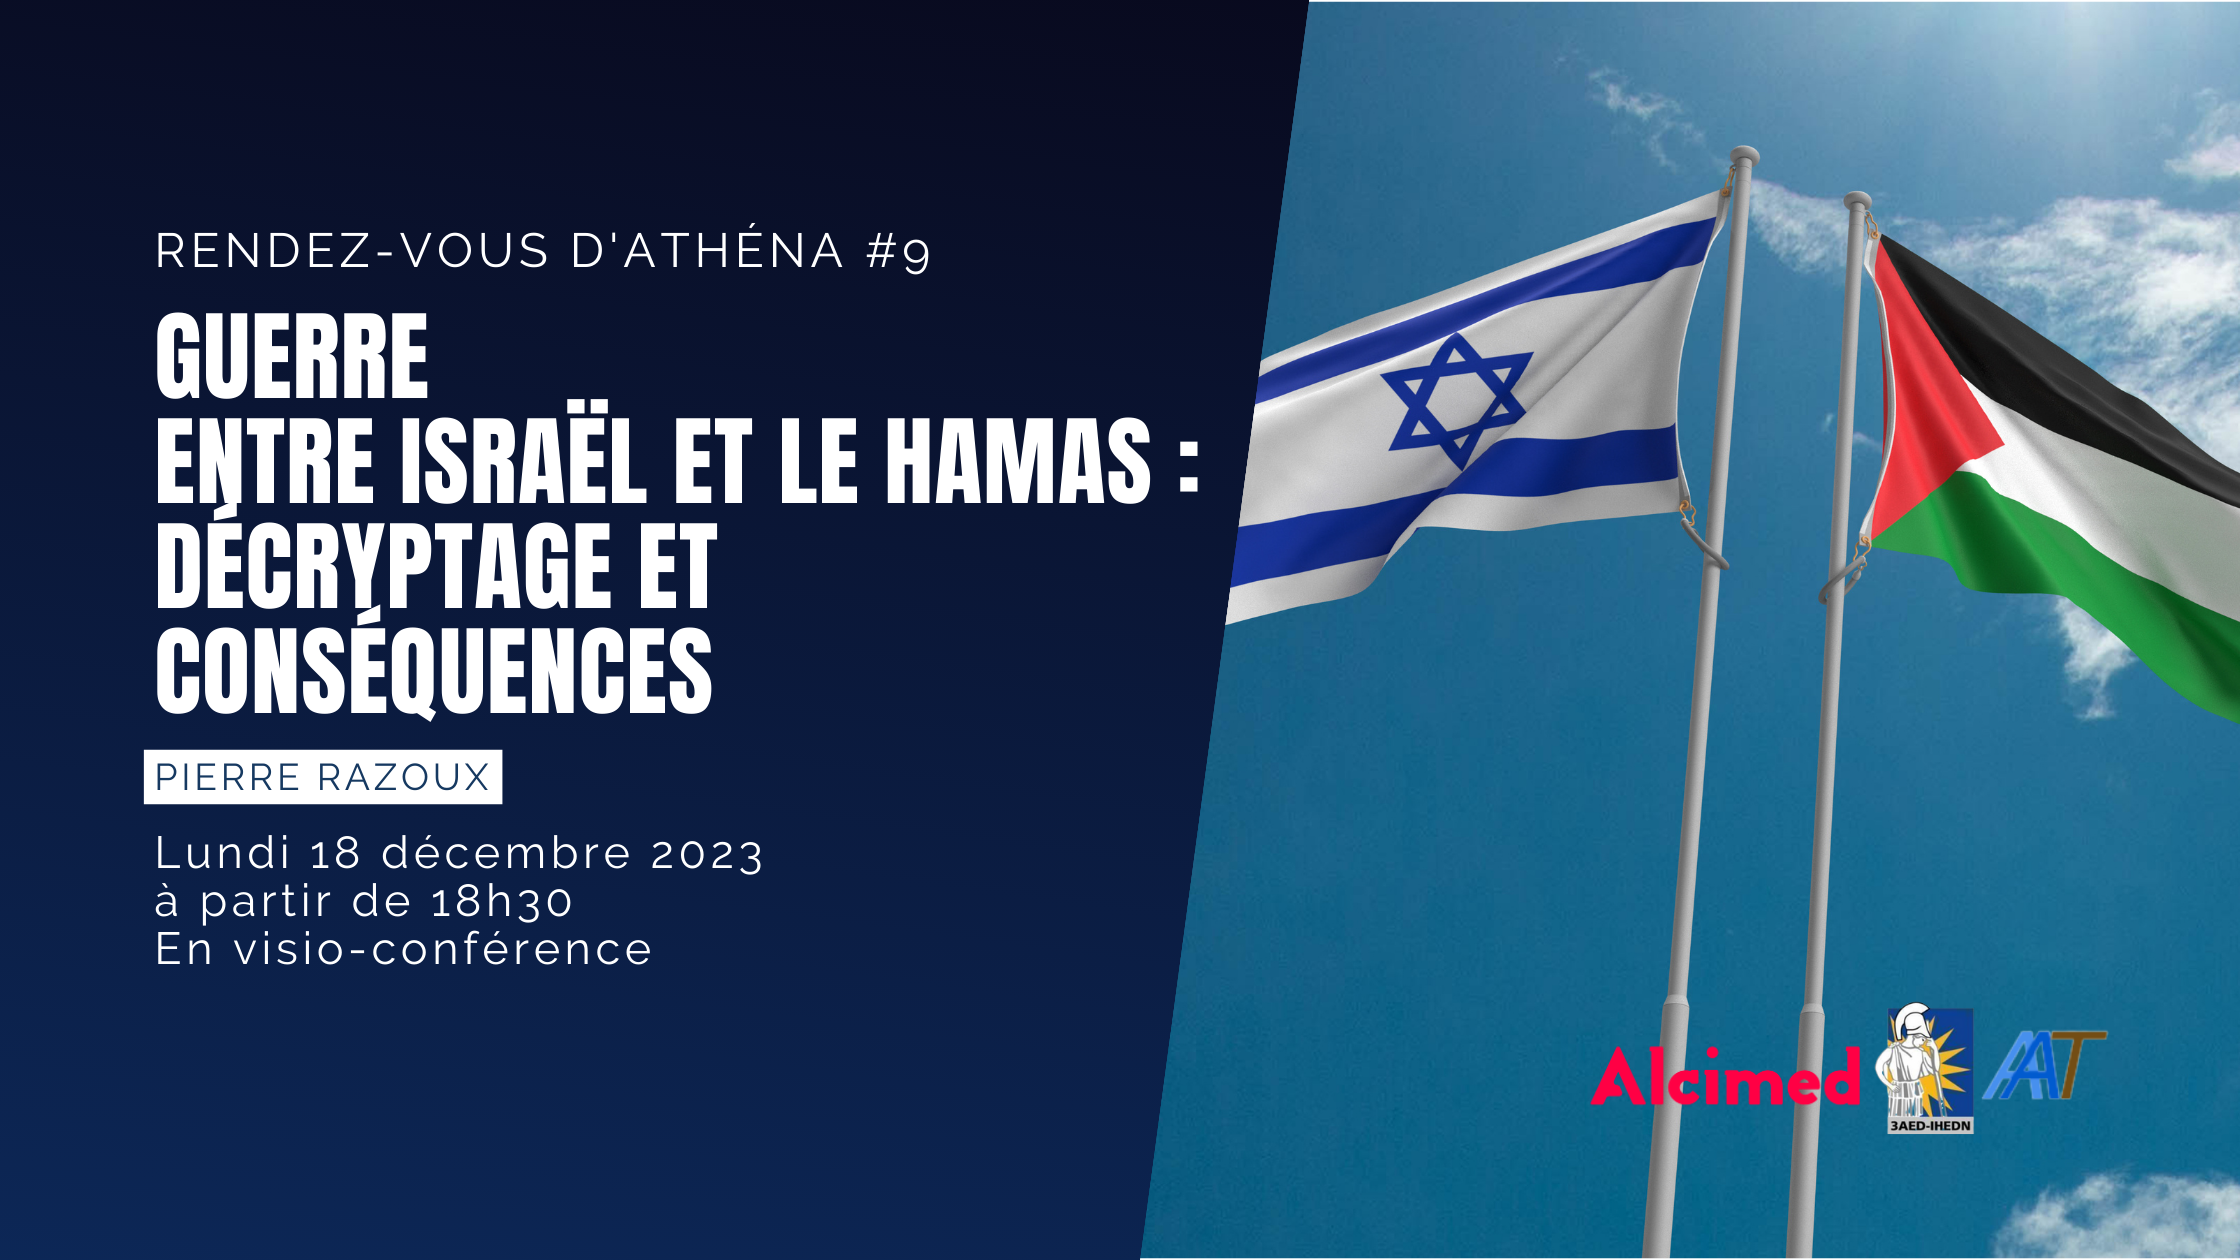 Rendez-vous d’Athéna #9 | Guerre entre Israël et le Hamas : décryptage et conséquences